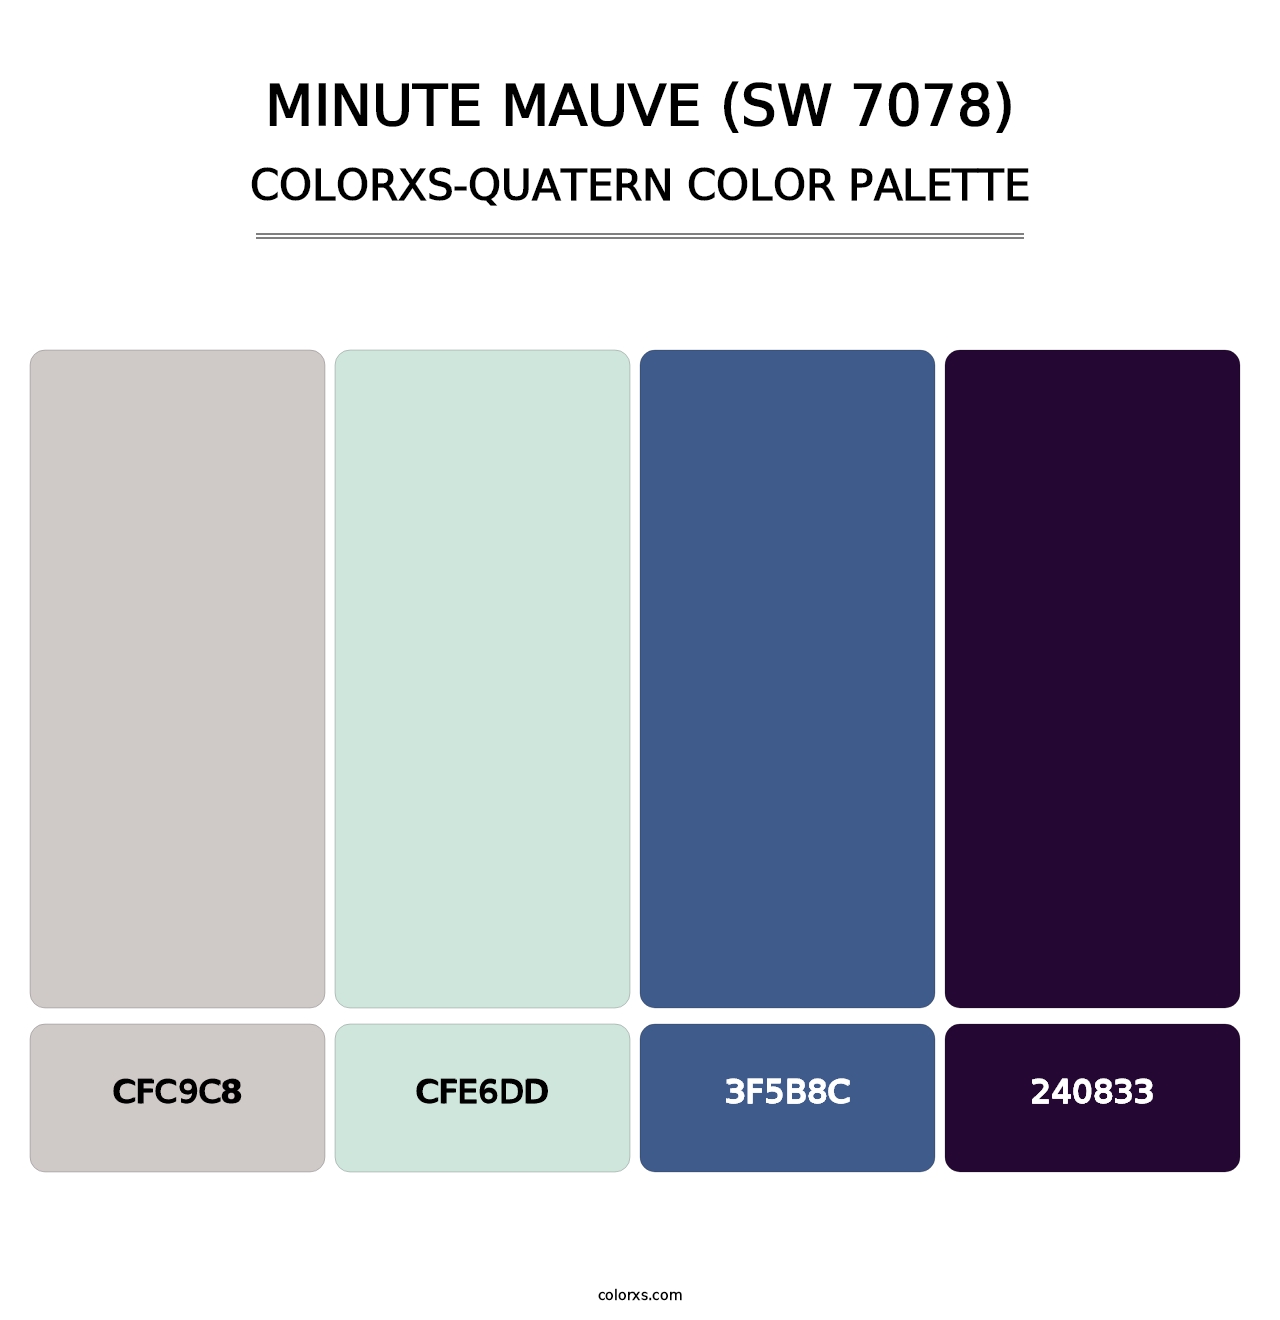 Minute Mauve (SW 7078) - Colorxs Quatern Palette